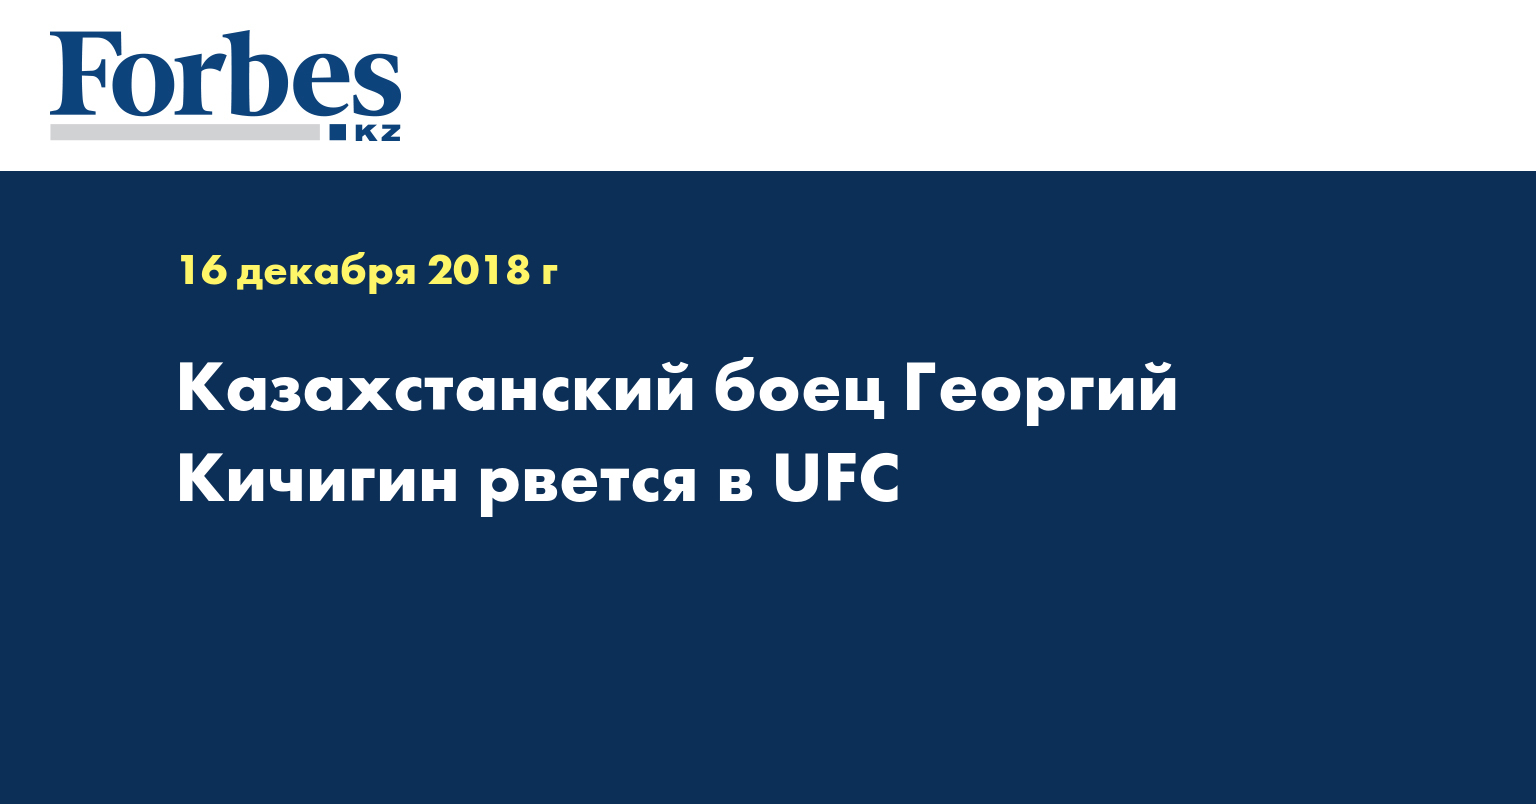 Казахстанский боец Георгий Кичигин рвется в UFC  